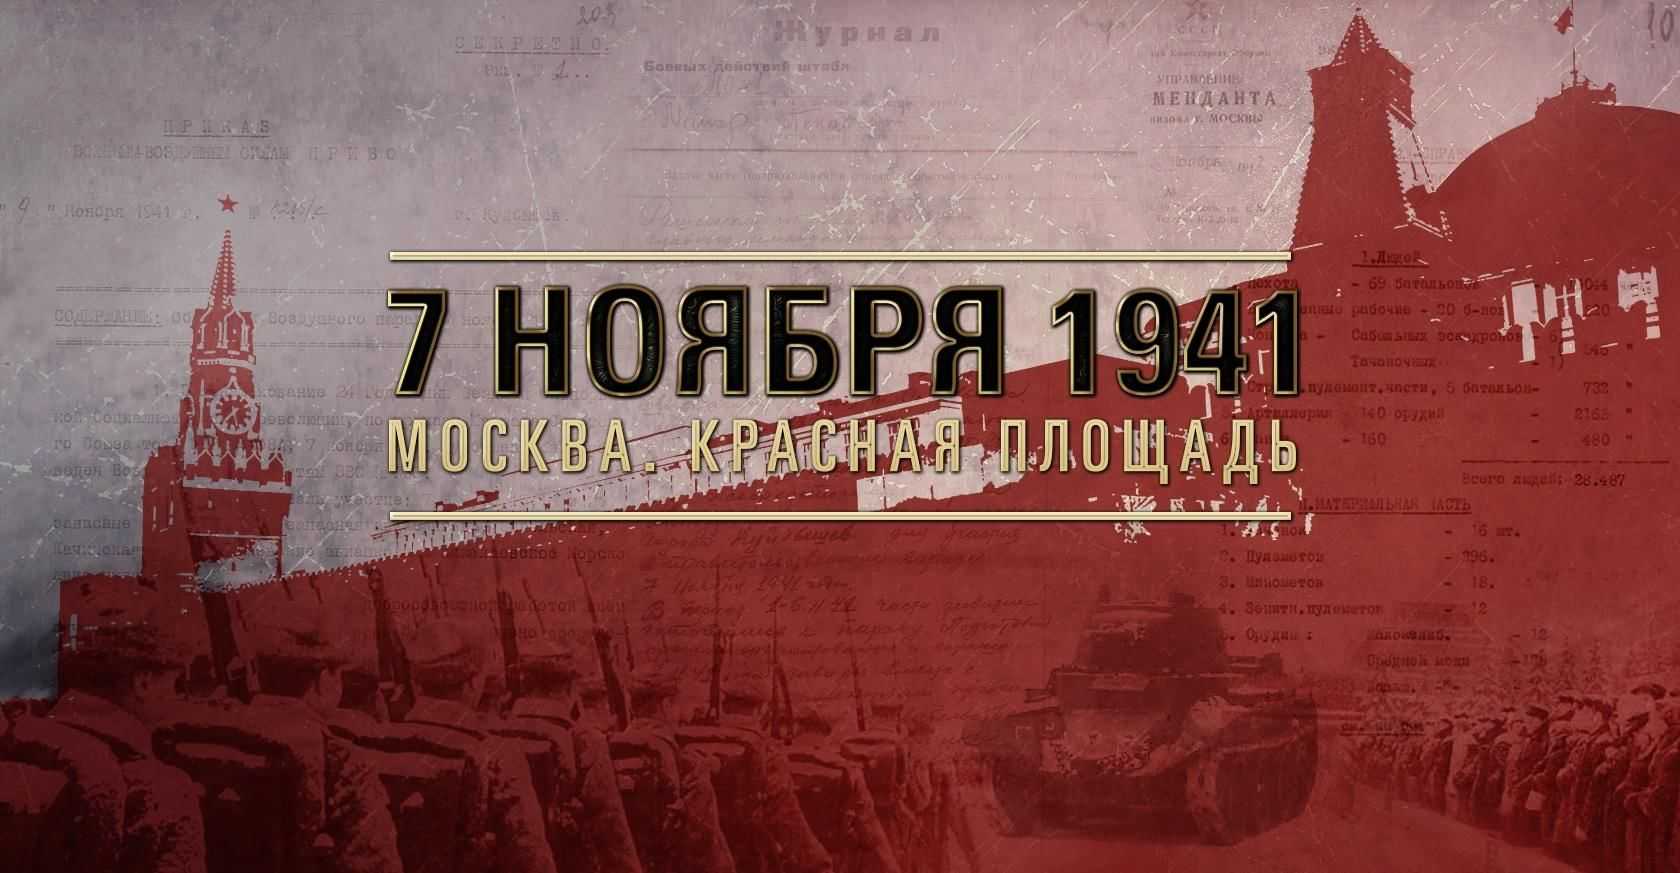 7 ноября 1941 год событие. День воинской славы России 7 ноября 1941 года парад на красной площади. Парад Октябрьской революции 1941. 7 Ноября 1941 года парад на красной площади битва за Москву. Парад на красной площади 7 ноября 1941 г..